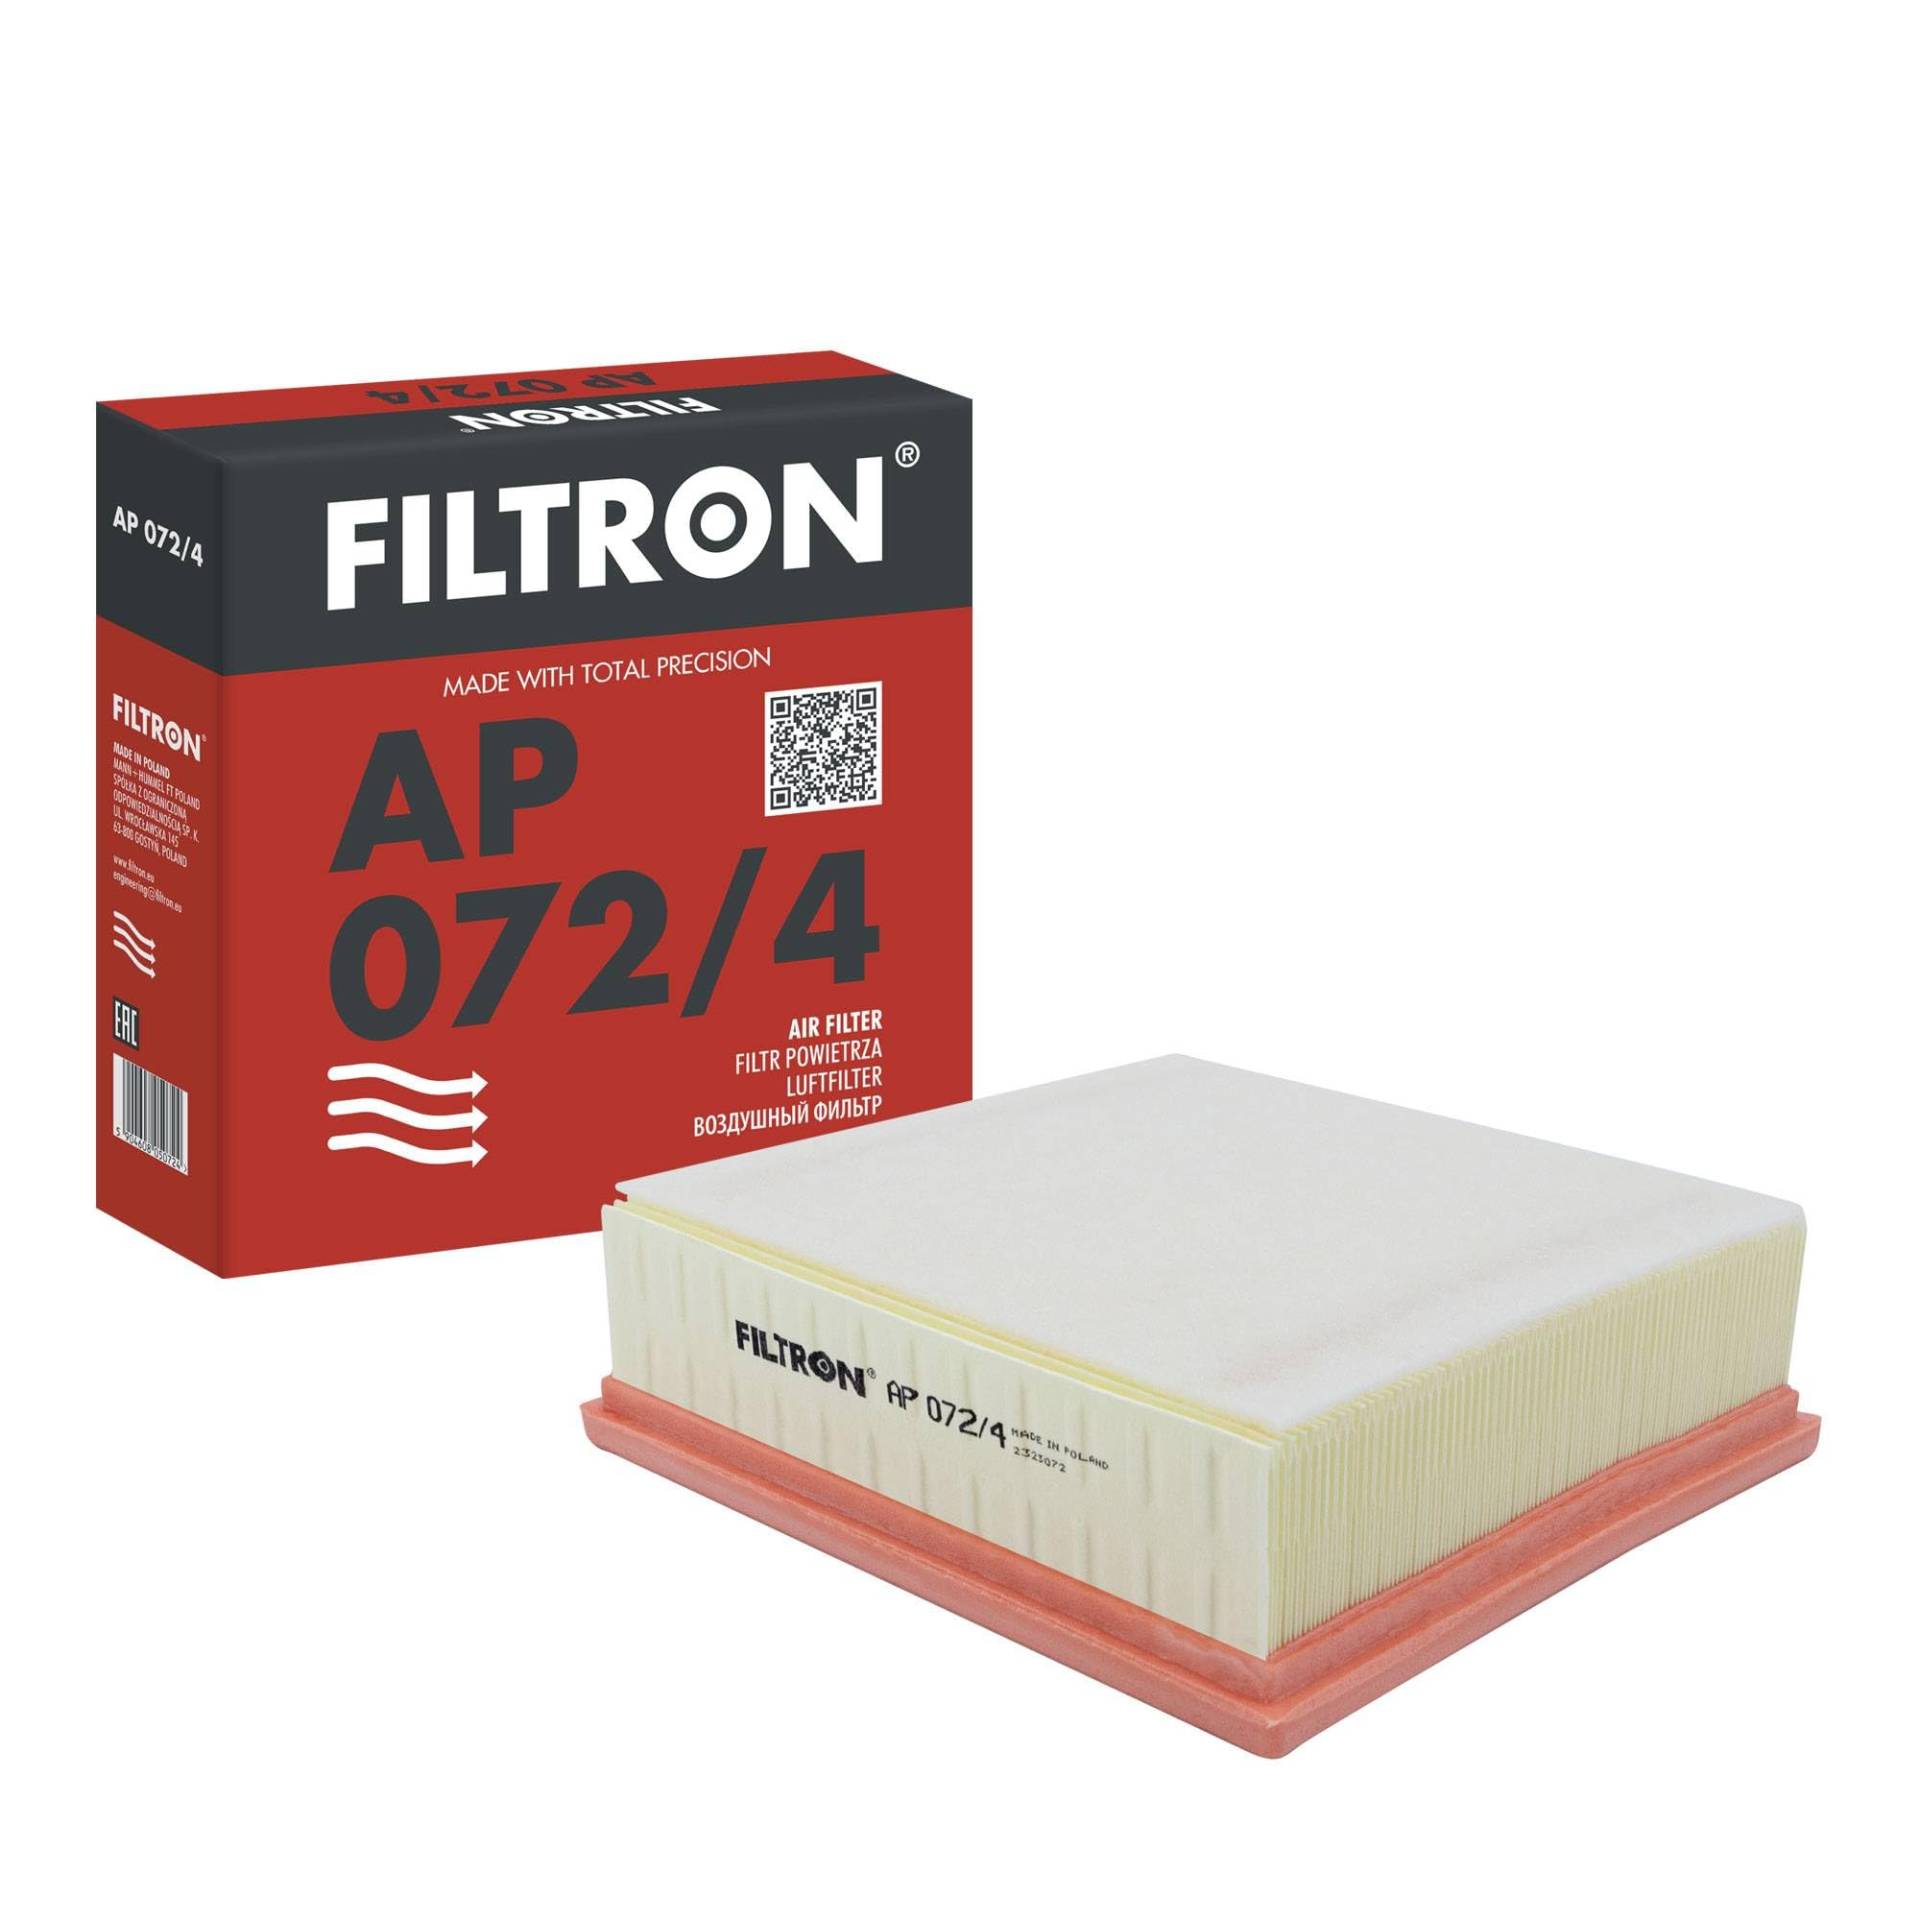 FILTRON AP 071/4 Luftfilter von Filtron